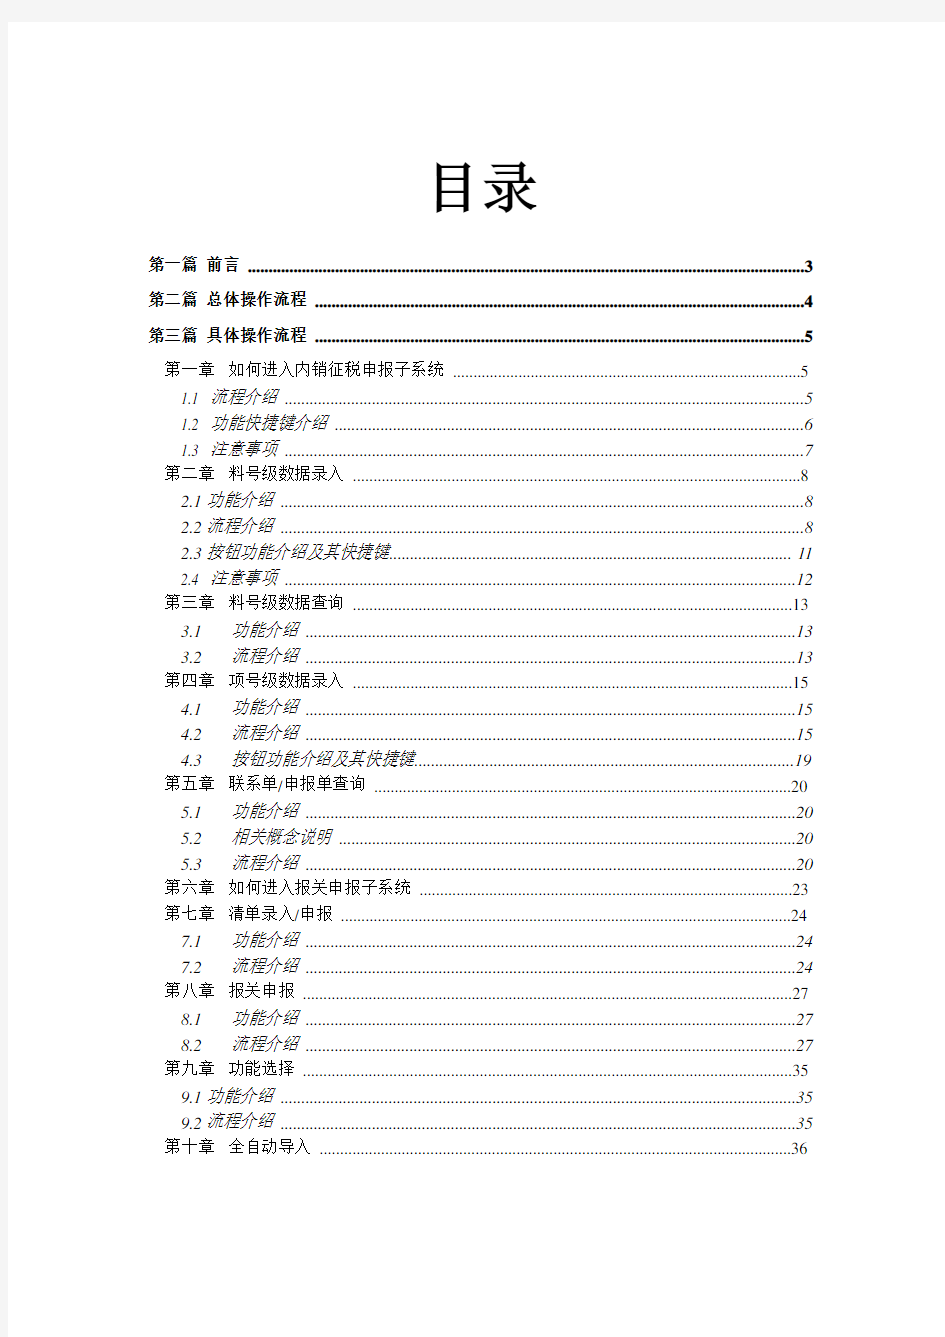 加工贸易内销征税管理系统操作手册-中国电子口岸